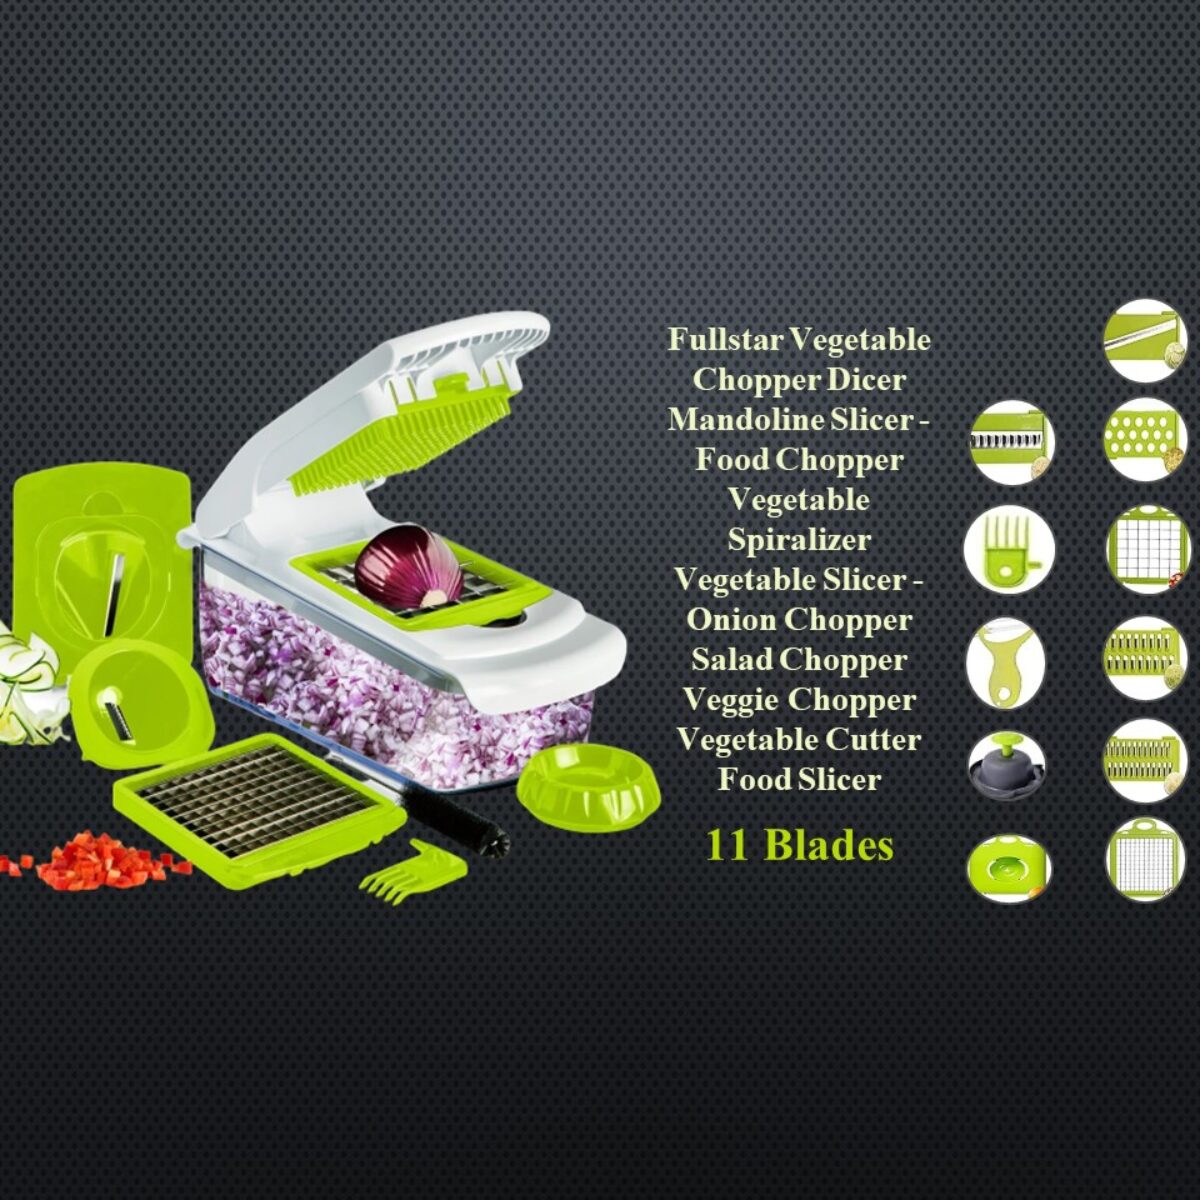 https://drdclassichome.com/wp-content/uploads/2022/07/Fullstar-Dicer-Mandolin-Slicer-Food-Chopper-Spiralizer-Vegetable-Slicer-Onion-Chopper-Salad-Chopper-Vegetable-Chopper-Food-Chopper-11-Blades-2-1200x1200.jpg